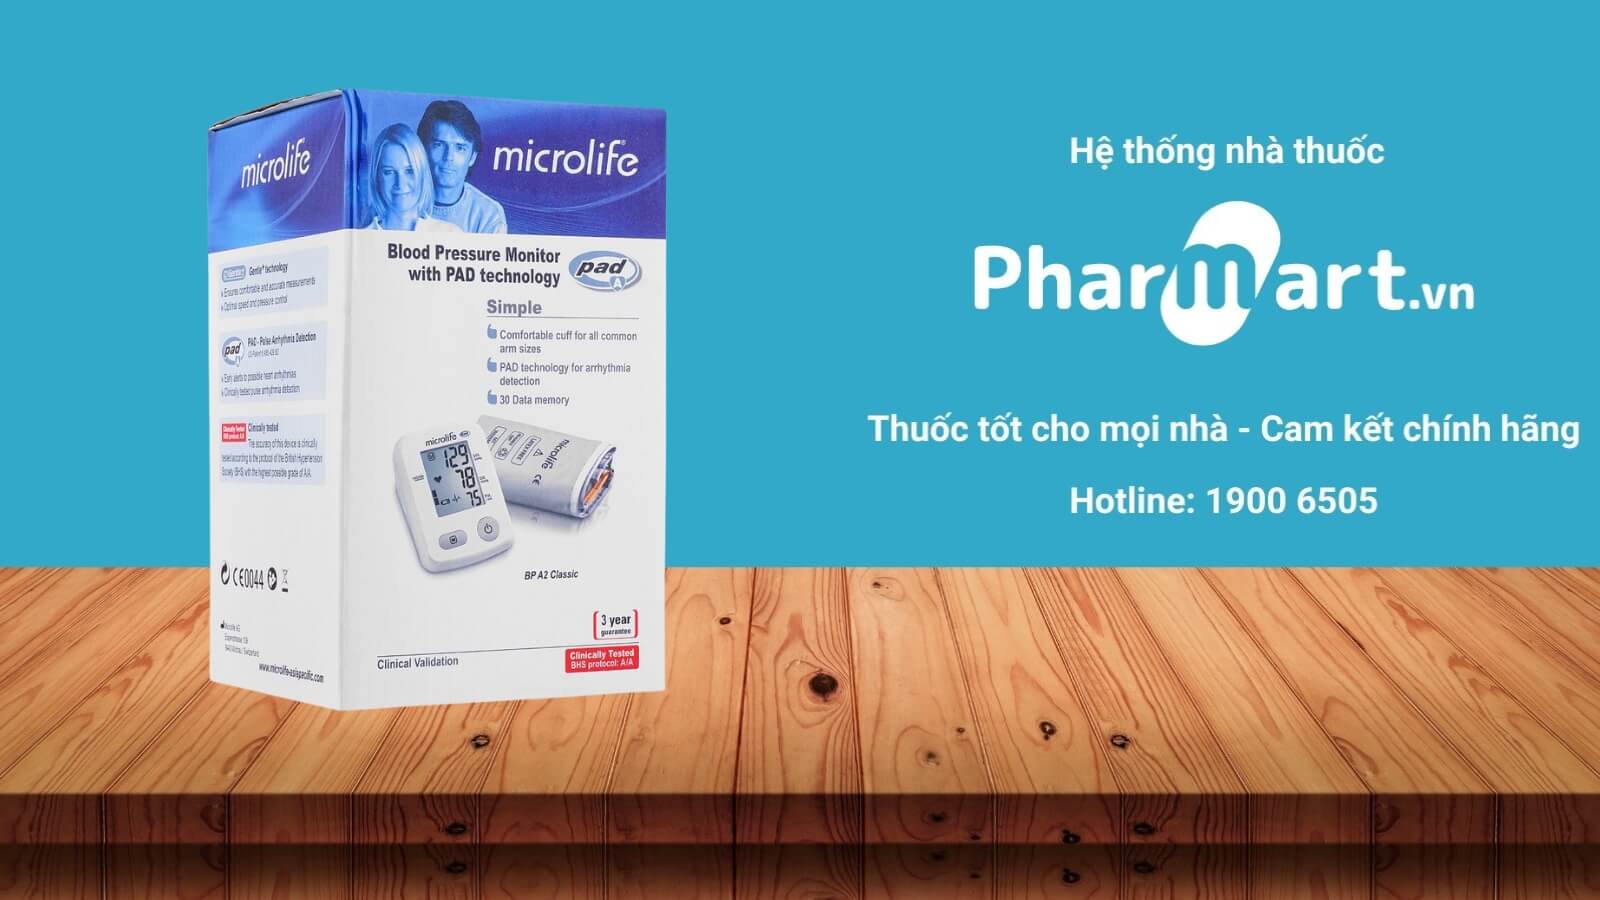 Máy đo huyết áp Microlife BP A2 Classic được phân phối tại Nhà thuốc Pharmart